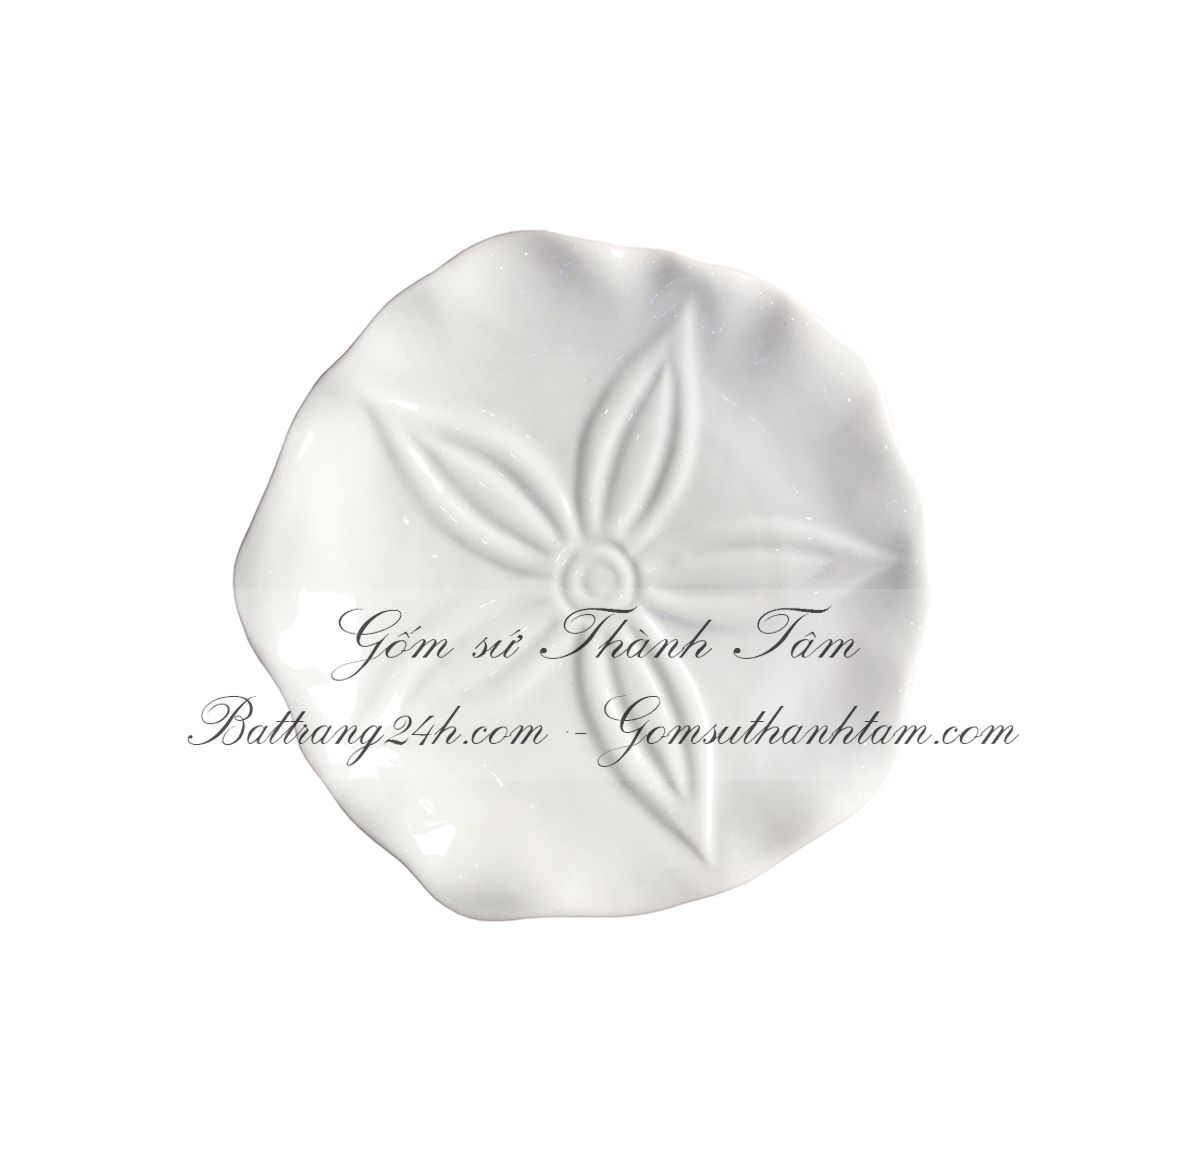 Bộ bát đĩa men trắng tinh cành hoa Bát Tràng gốm sứ Việt Nam, bộ bát đĩa an toàn cho sức khỏe